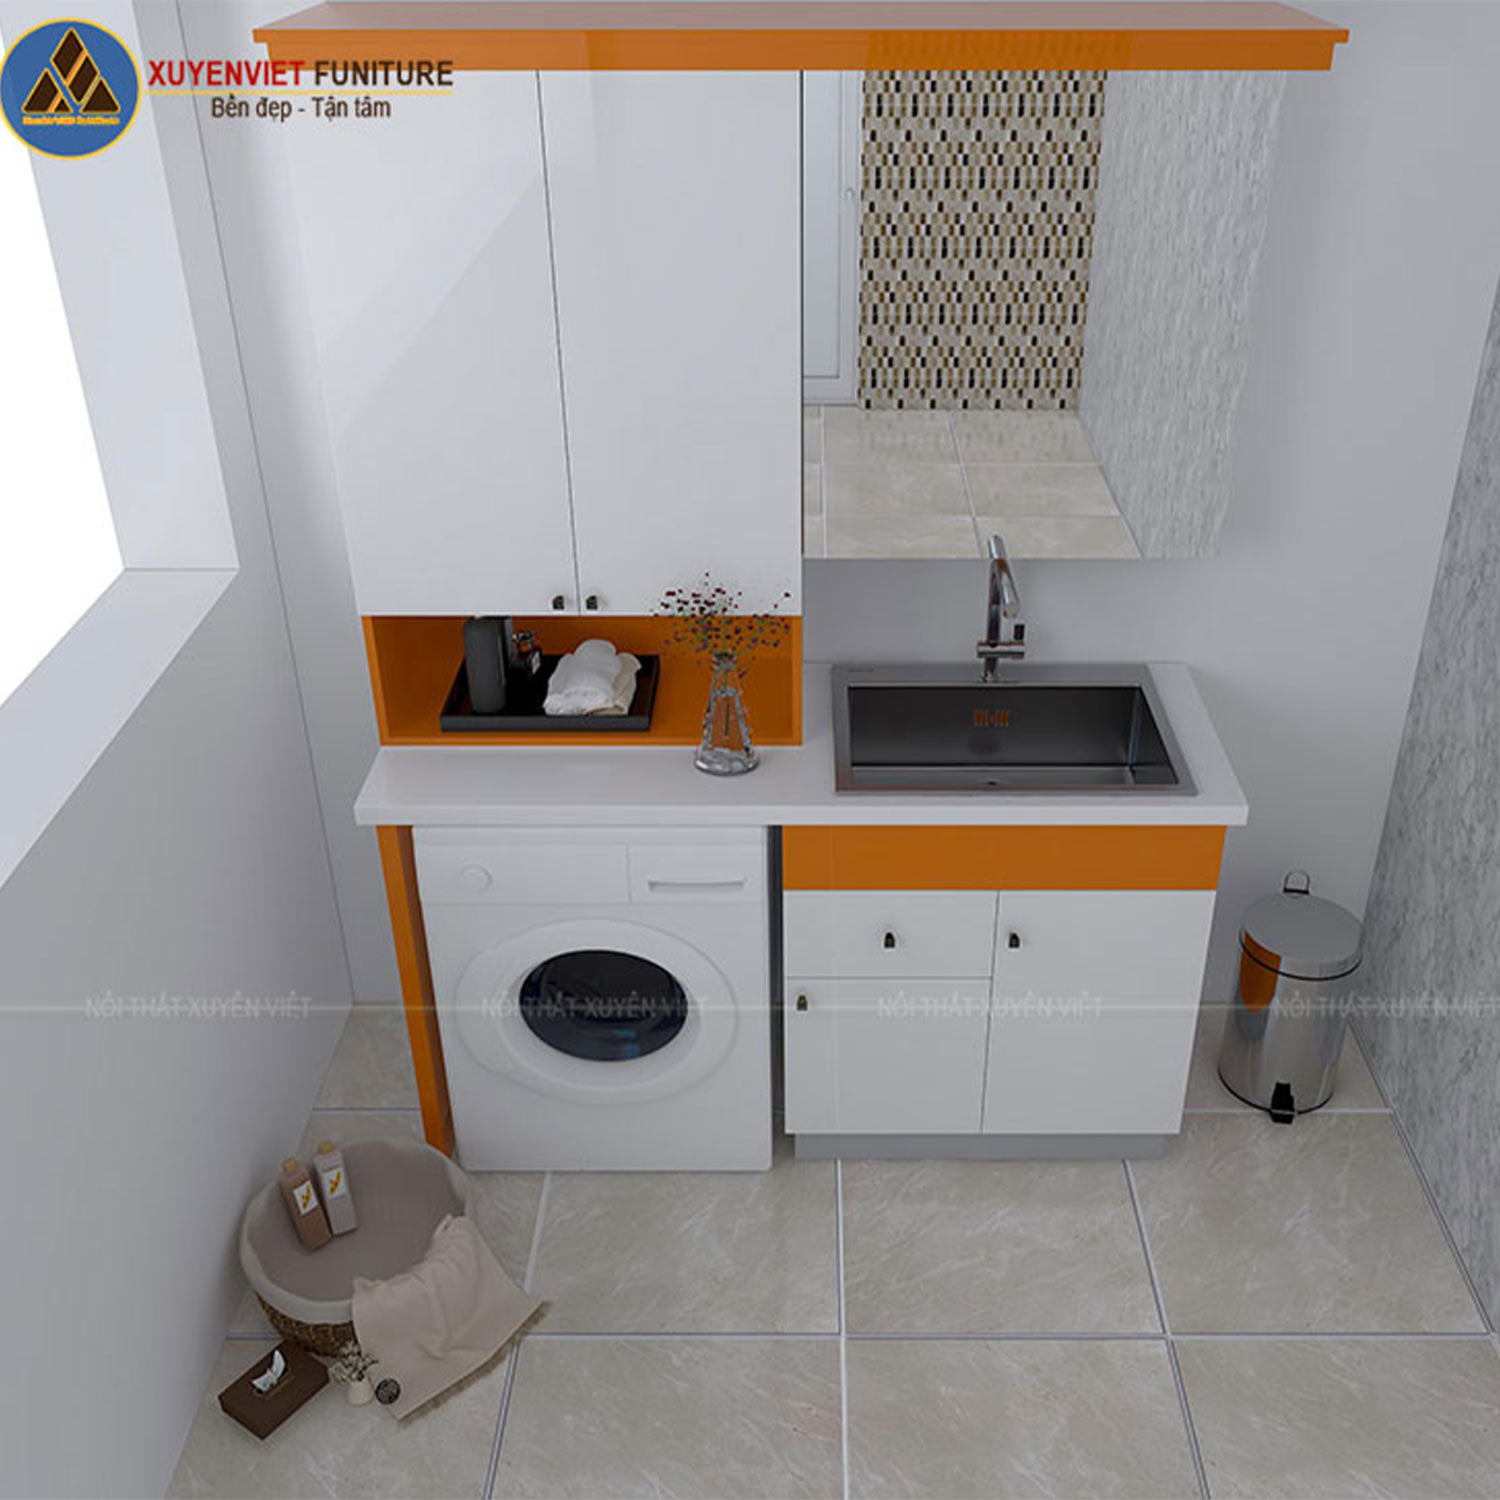 Tủ lavabo sơn men bóng kết hợp tủ máy giặt LBK2031 phù hợp với không gian phòng tắm có diện tích rộng